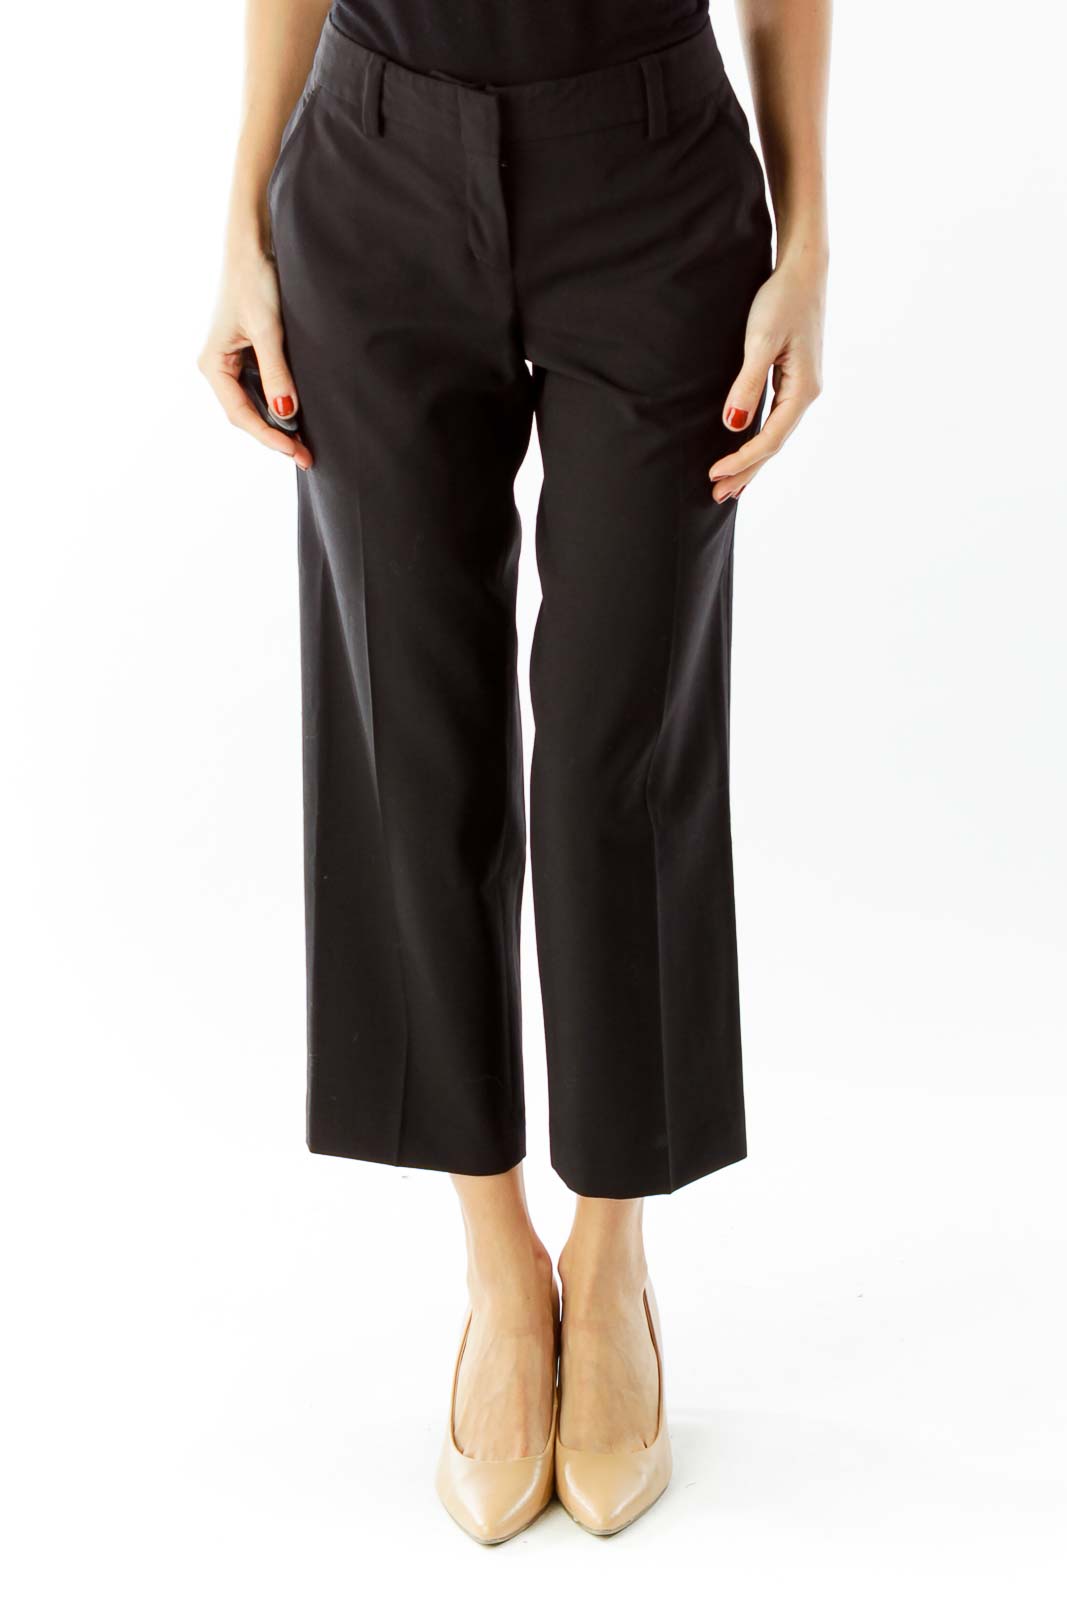 BCBG MaxAzria - Black Cropped Suit Pants Wool Spandex | SilkRoll